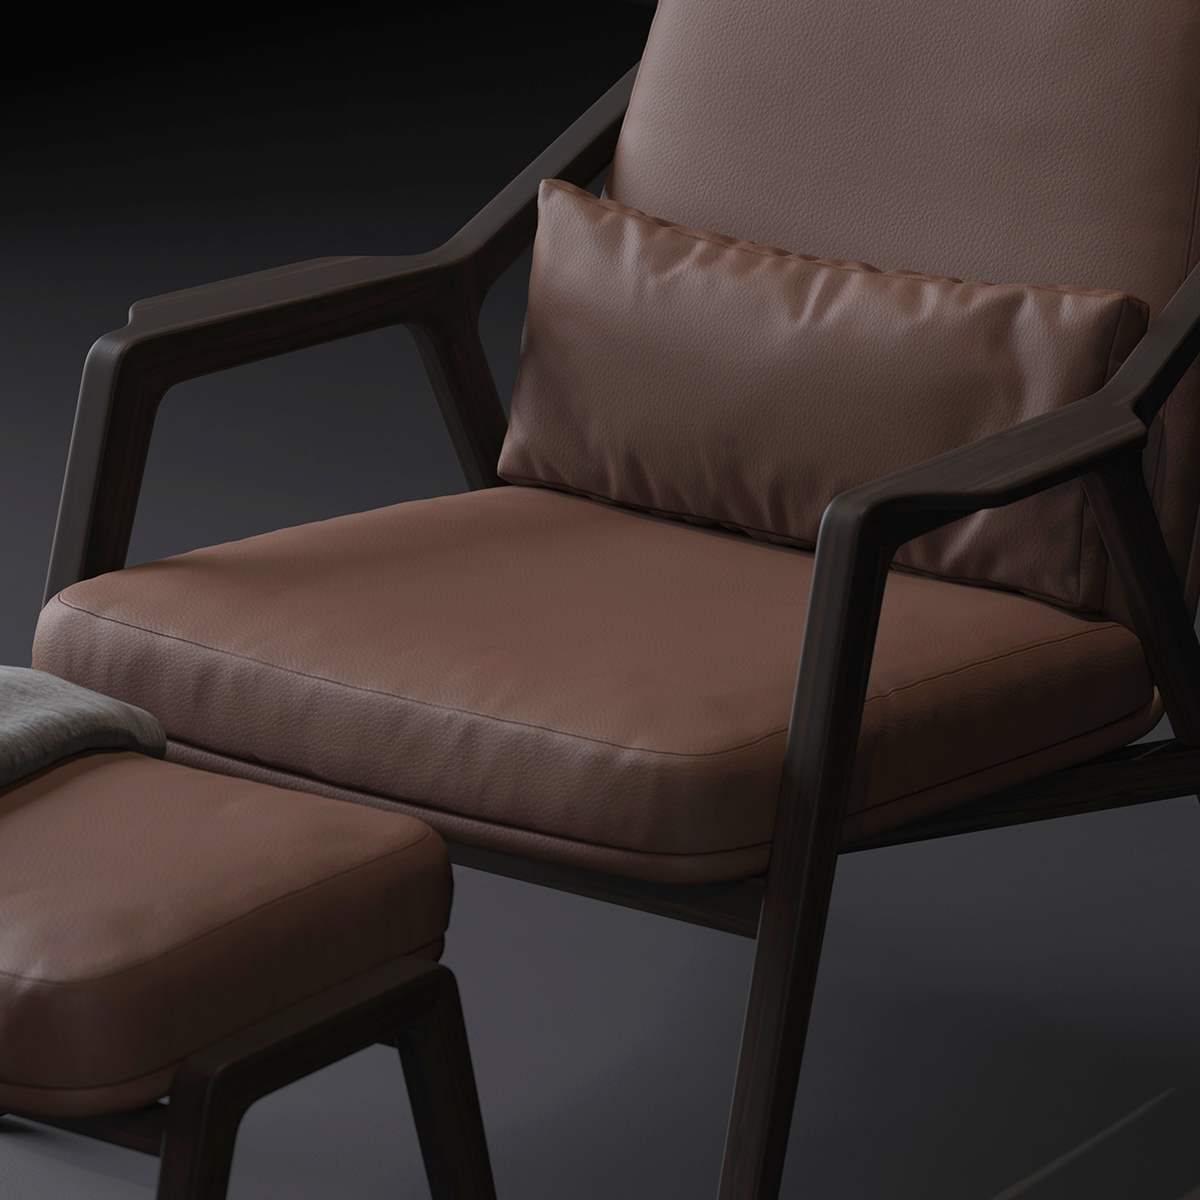 3ds max architecture archviz armchair chair furniture Interior interior design  Render visualization